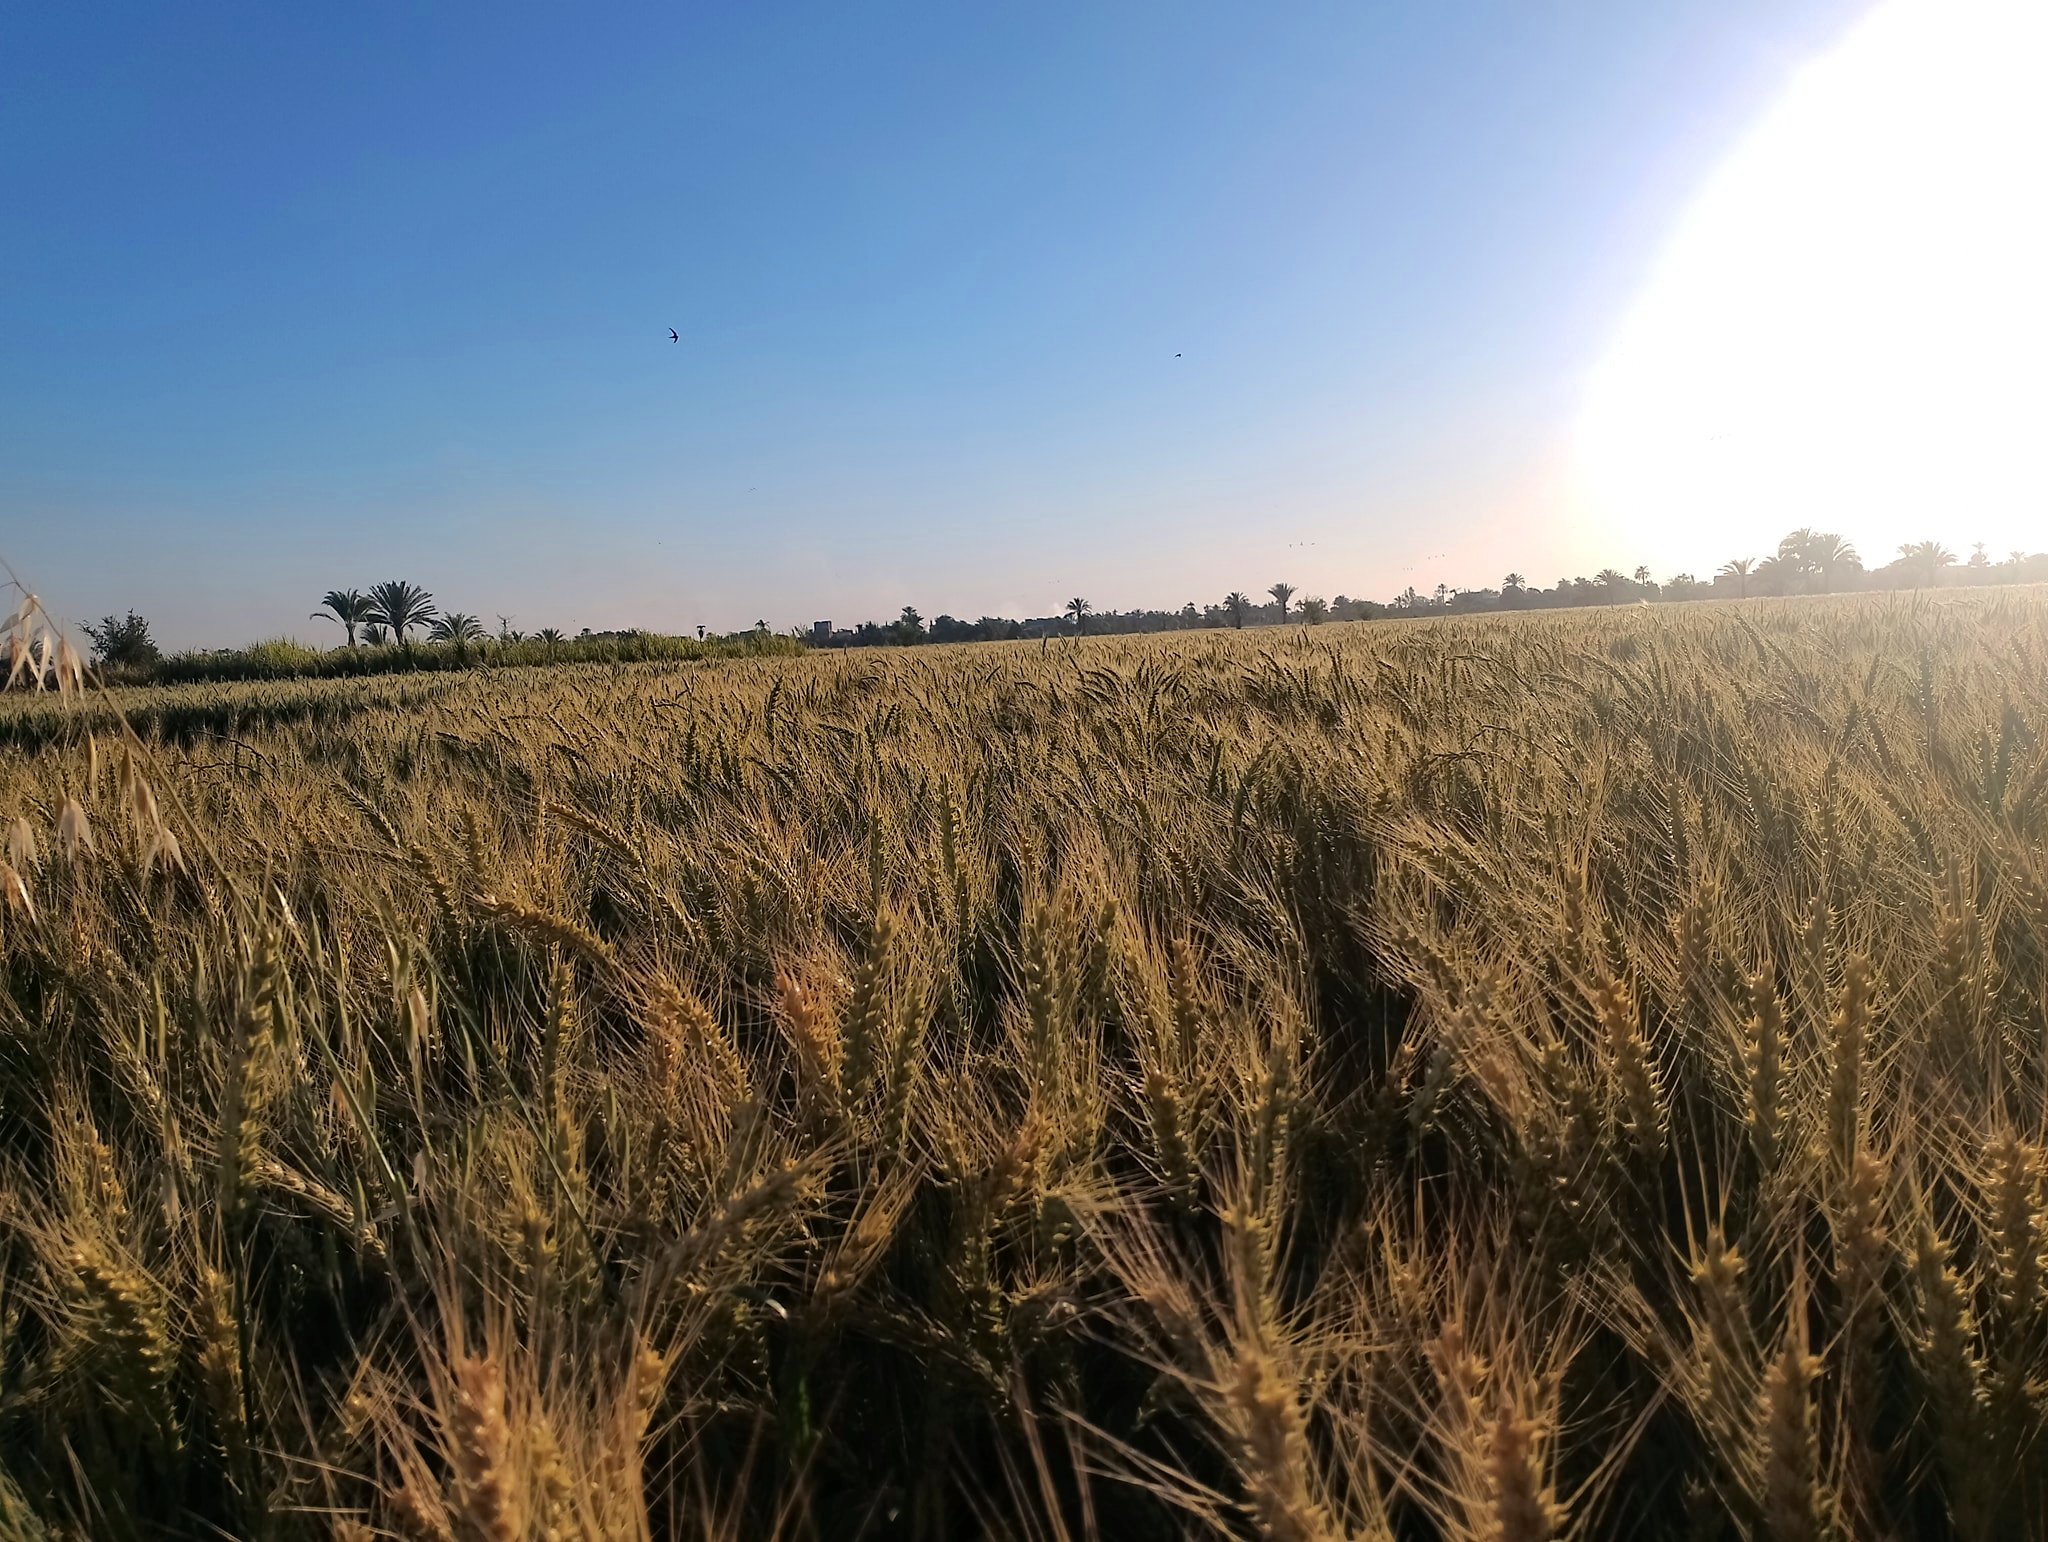 القمح فى مزارع الأقصر يدخل موسم الحصاد